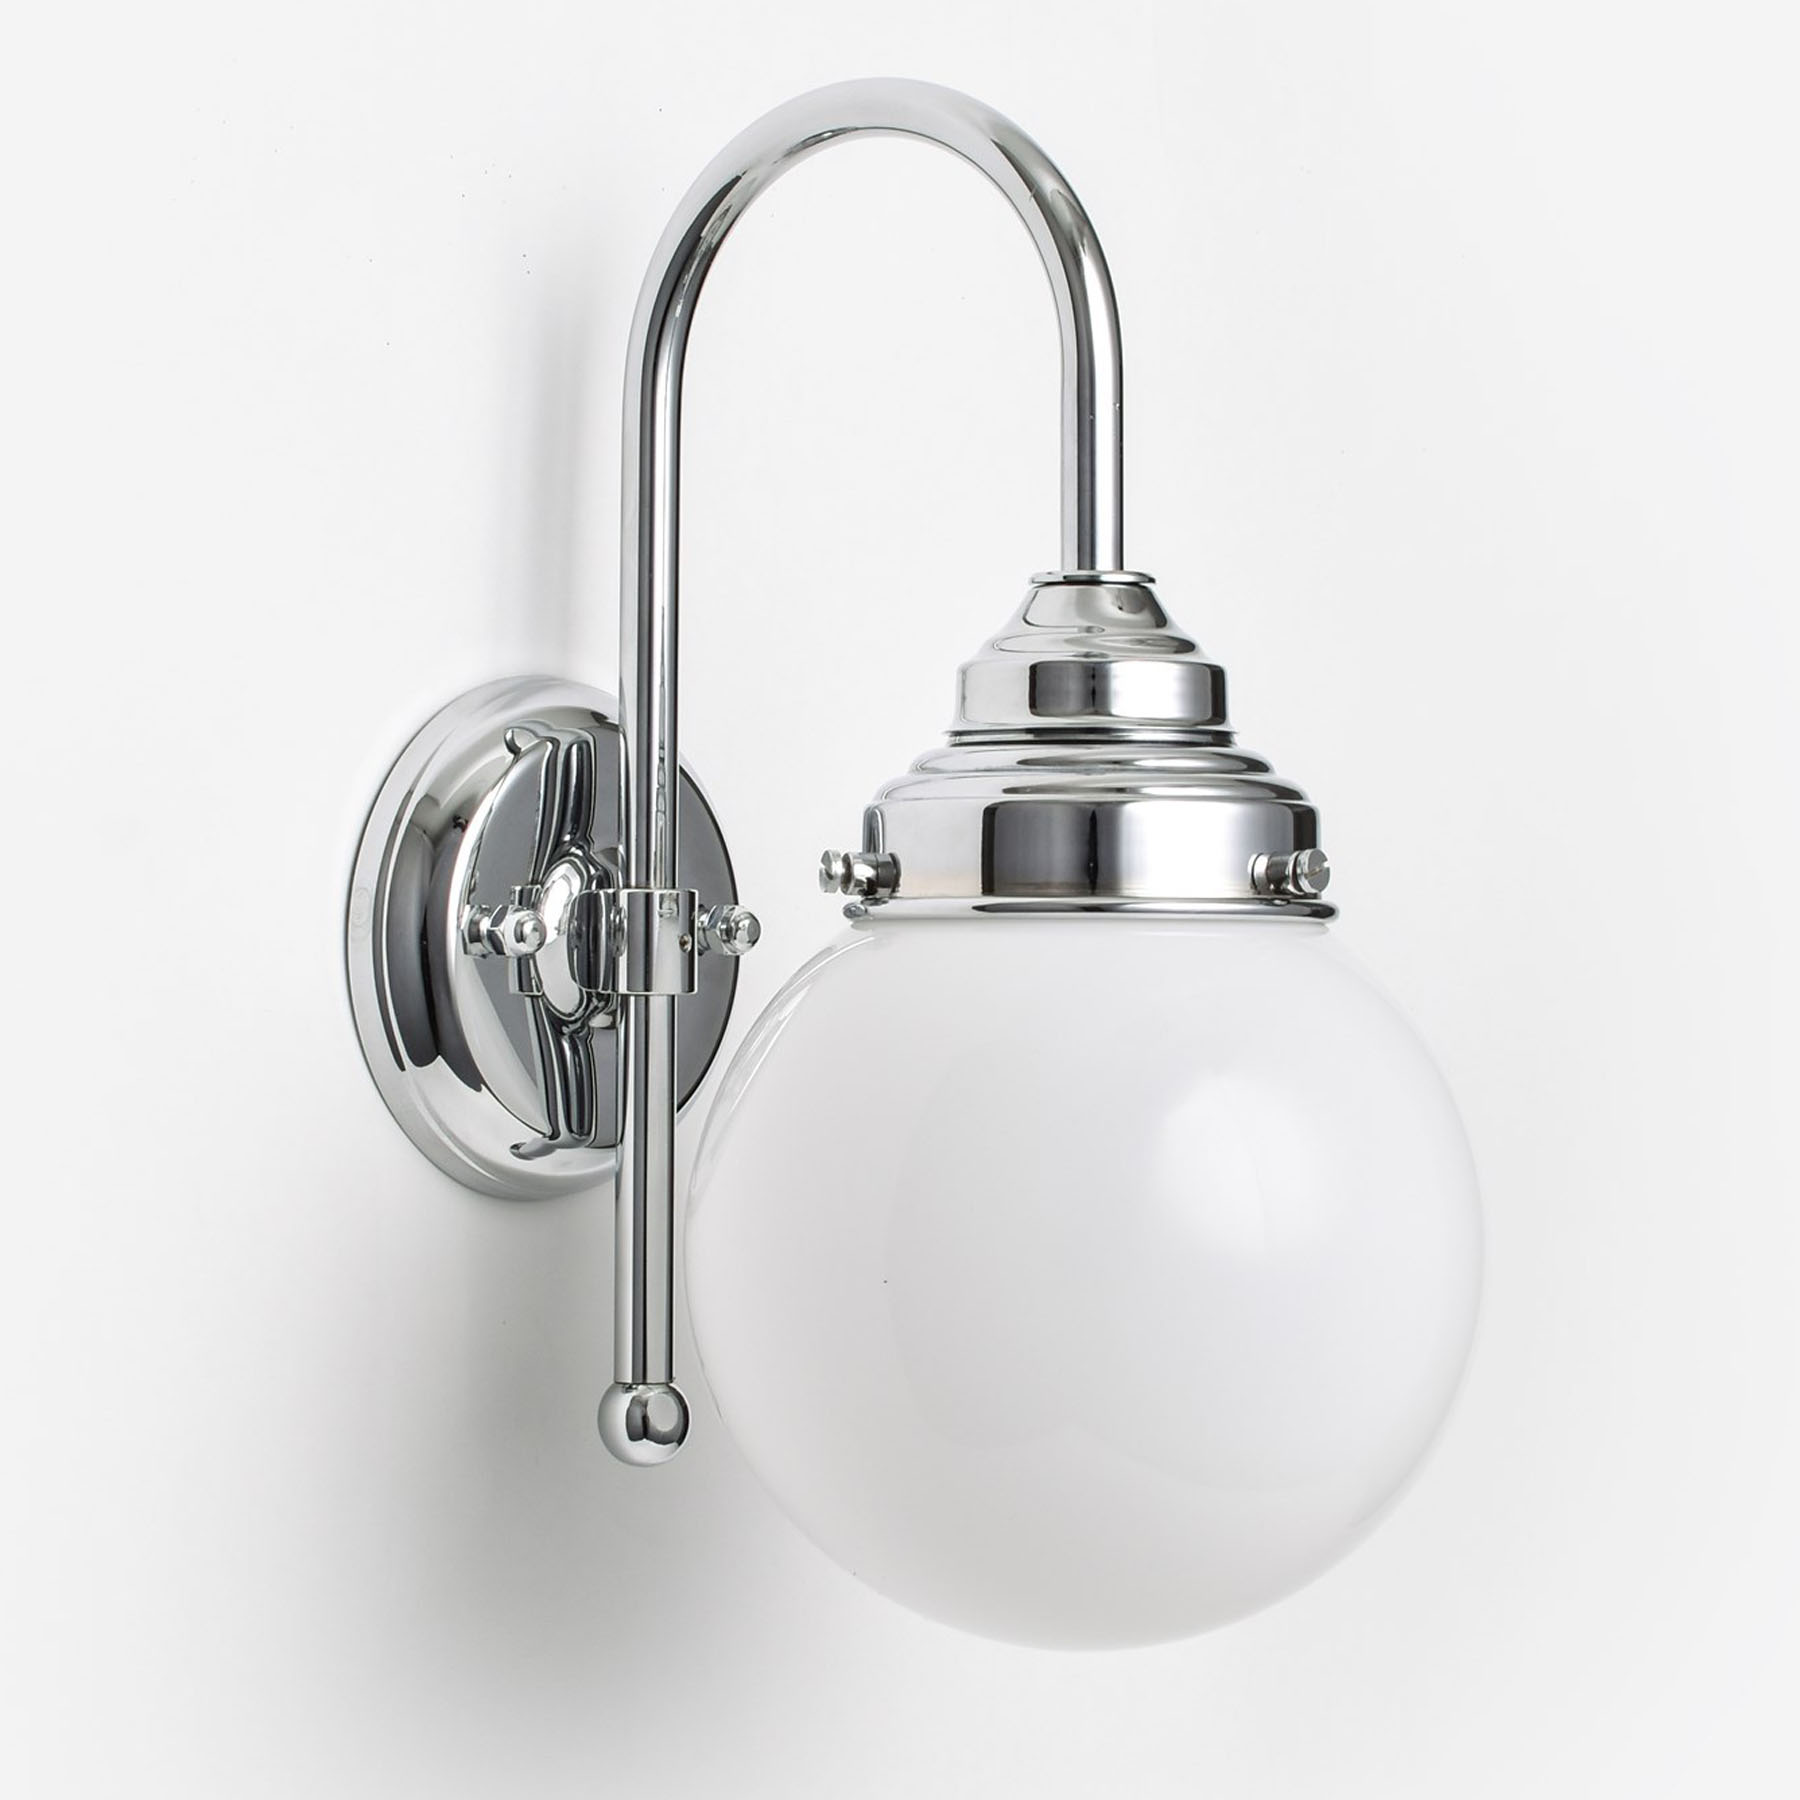 Small bathroom wall lamp with glass ball on arc arm (Ø 15 / 20 cm)